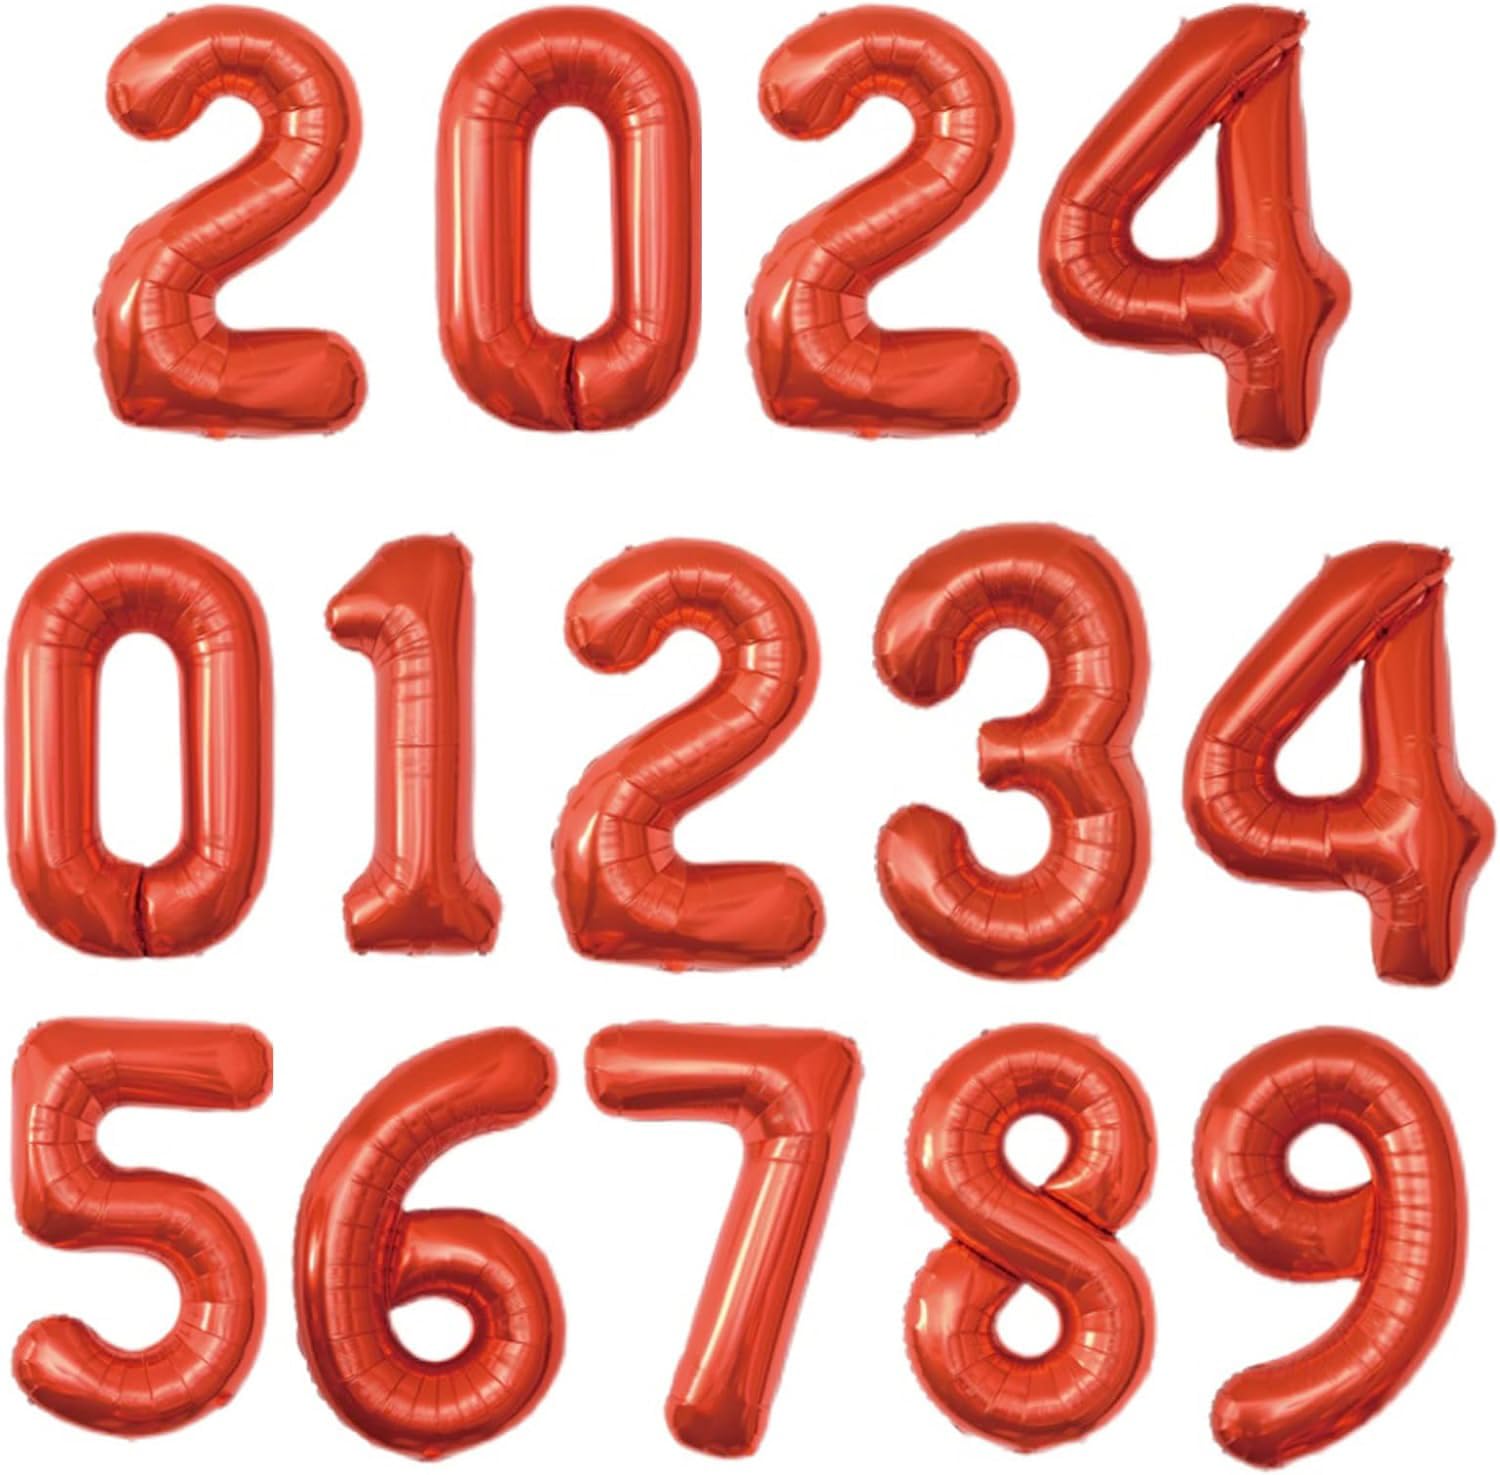 商品情報商品の説明主な仕様 ■約35cmの数字風船です。通常の数字「0〜9」セットに「2」「0」「2」「4」四文字を追加し、2024年スペシャルセットに！特別な日の年度と日付にピッタリです。br■セット内容：数字0×2個、数字2×3個、数字4×2個、数字1、3、5、6、7、8、9各1個、計14個入り。br■壁貼付けたり、床などに置いたり、手に持って写真をとってもかわいいです！お誕生日、七五三、入学式、結婚式、結婚記念日、ペットをお迎えした日、還暦祝い、開店祝い、推しの誕生祭など数字を使ったお祝いに最適です♪br■BTZOバルーンの色彩・サイズ・シェイプバリエーションが豊富で、誕生日会だけでなく、結婚式や歓送迎会、卒園式、入園 式、運動会、ハロウィン、クリスマス、新年、バレンタイン、展示会、リリース(放天)やお祭りなどのアトラクションや販促用としてもよく使 われています。br■ご購入後すぐに中身の確認をお願いいたします。商品の品質には万全を期しておりますが、万一不良・配送中の破損または注文内容が異なる場合は恐れ入りますが「注文履歴」→「出品者に連絡する」から弊店と連絡してください。再発送または返金等誠心誠意に対応させていただきます。受付は日本語、英語が話せるスタッフが対応しています。また、バルーン製品には、小さな部品が入っています。間違って飲み込む危険がありますので、6才以上のお子さまにお勧めします。